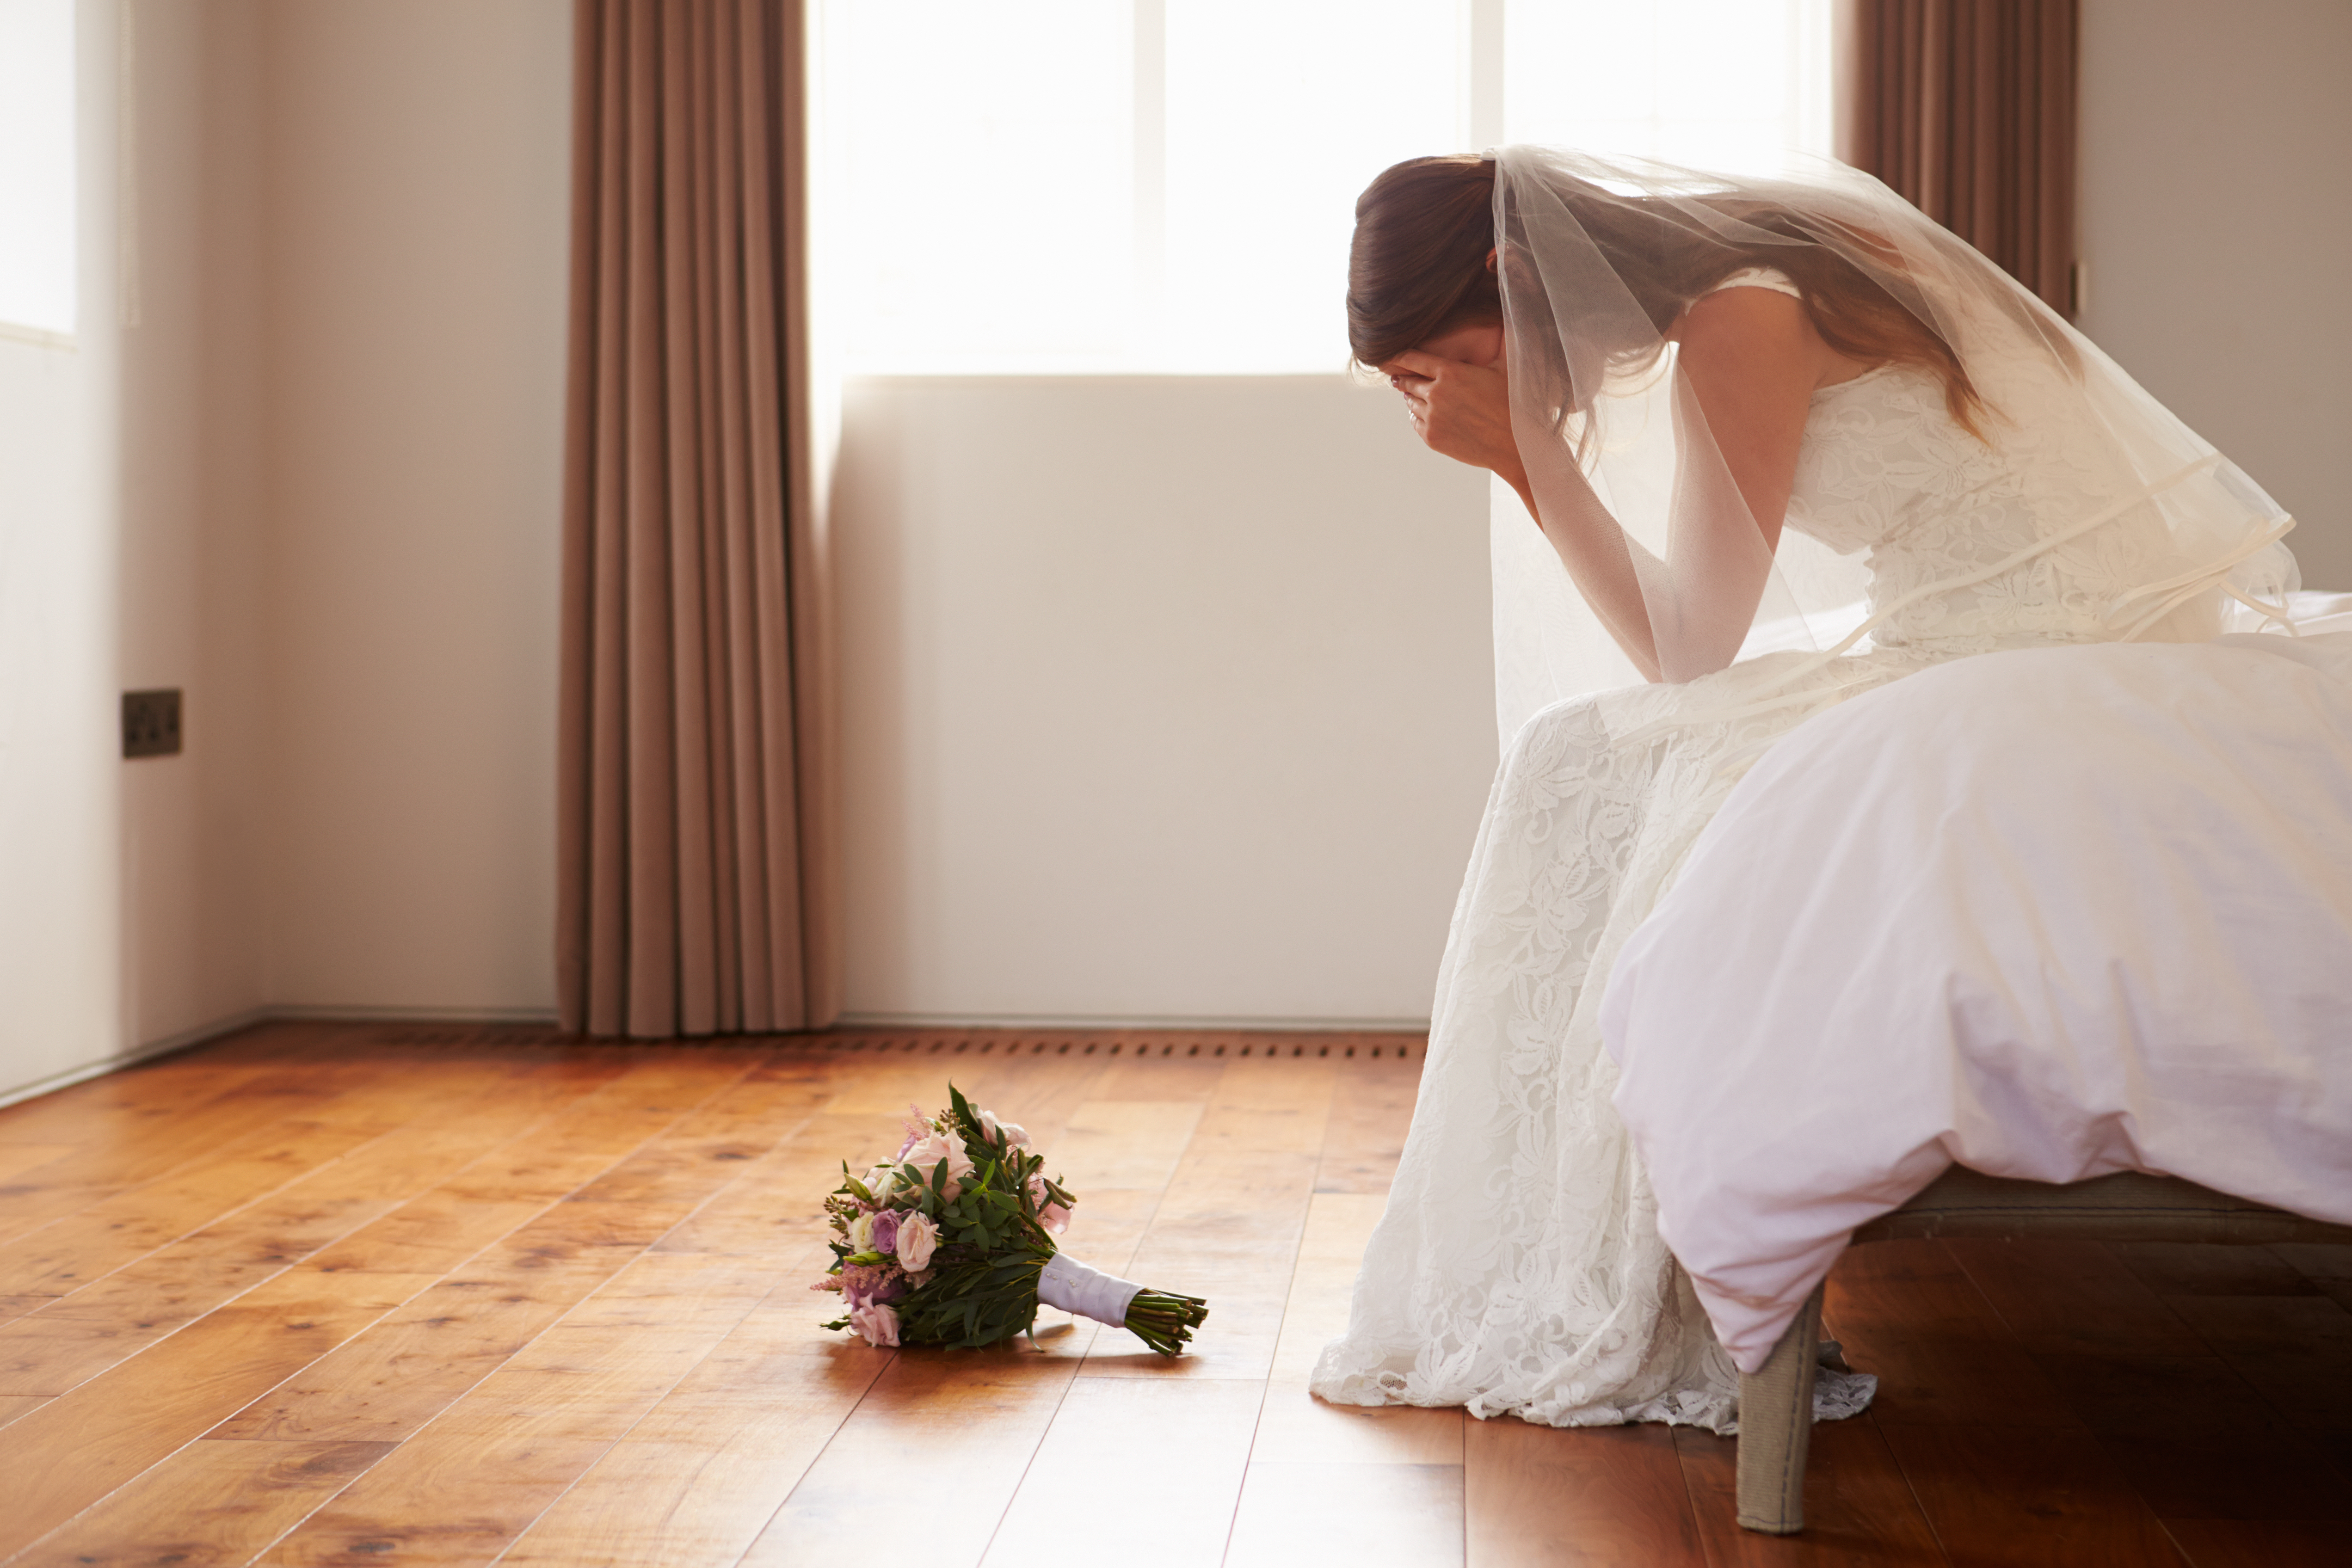 Uma noiva chorando em um quarto | Fonte: Shutterstock